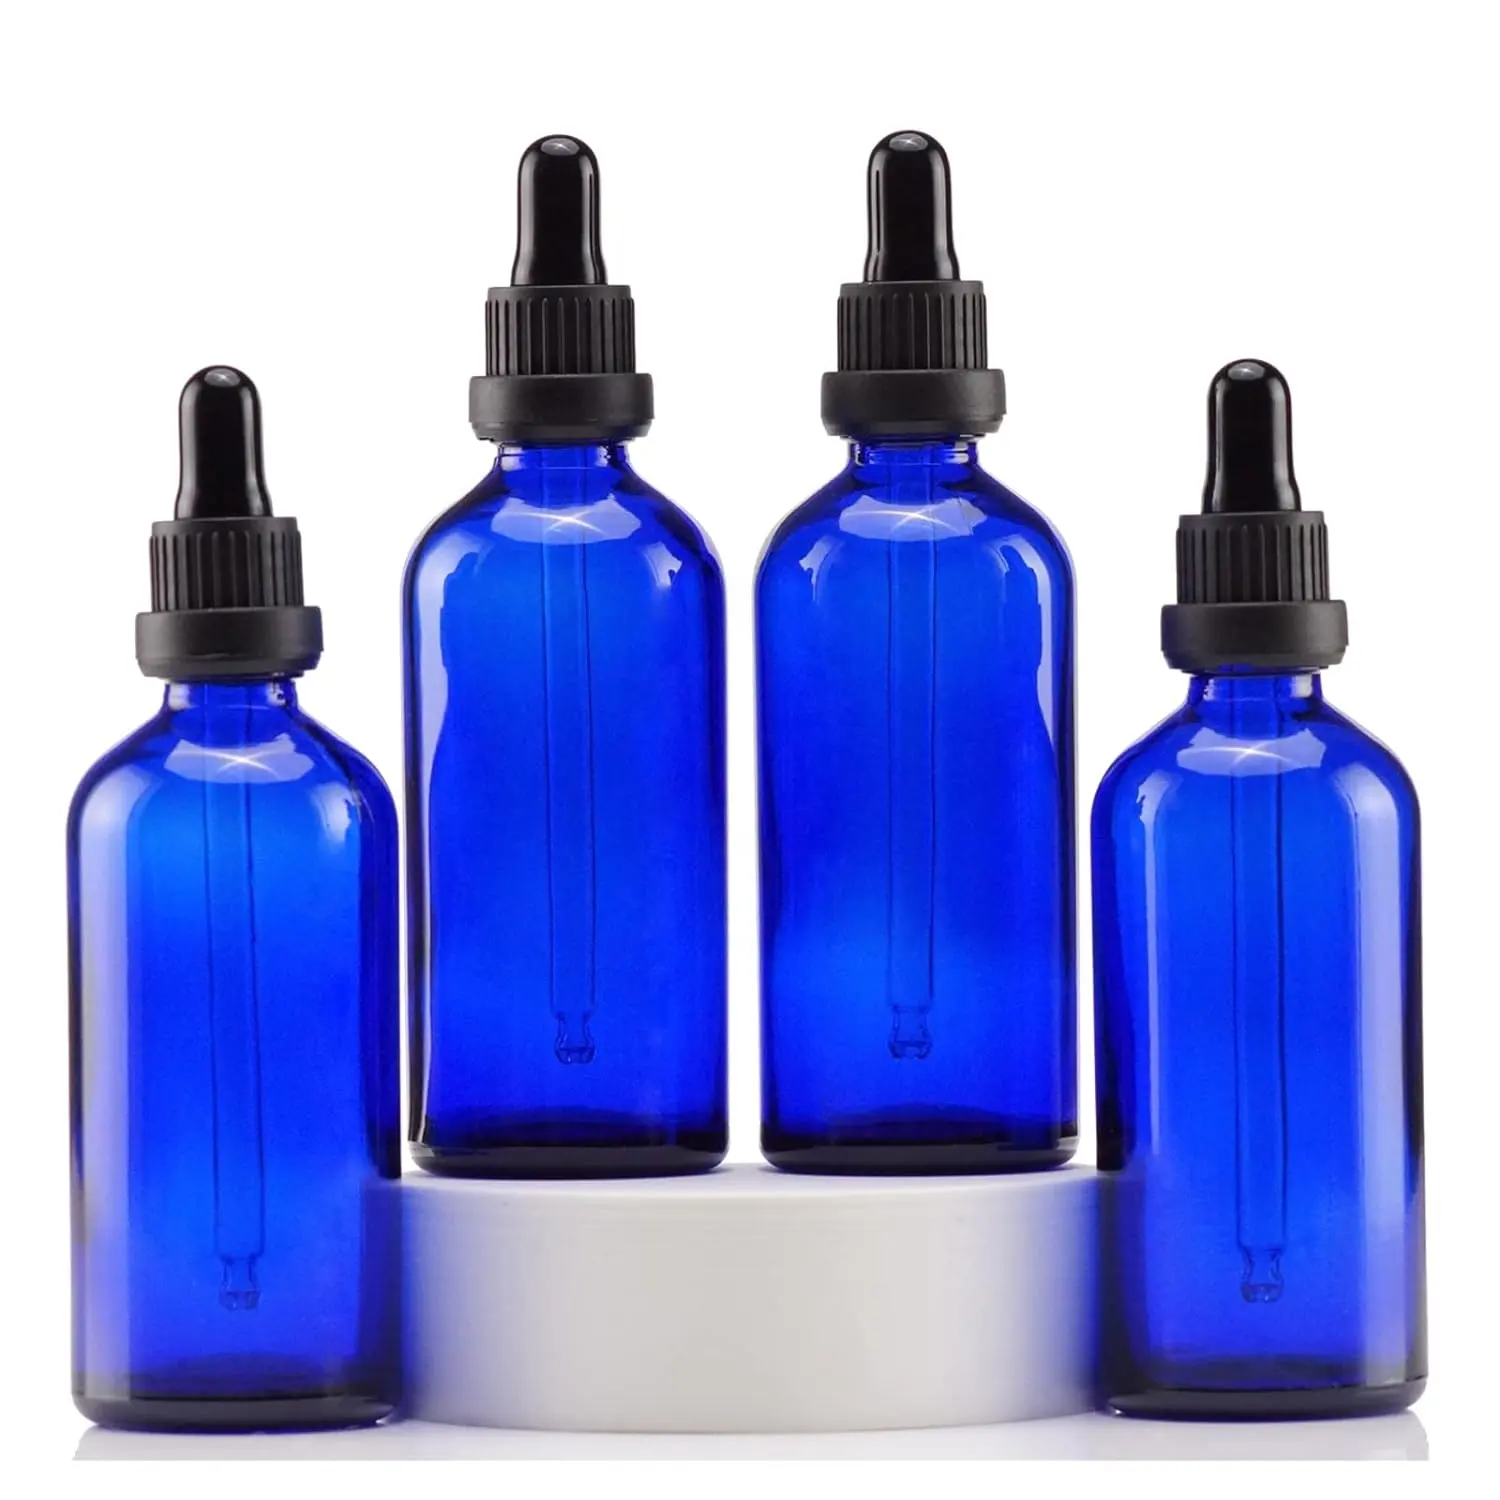 Frasco conta-gotas de vidro azul de 4 onças, frasco de tintura com conta-gotas de vidro para óleos essenciais, cosméticos, laboratório, farmacêutica